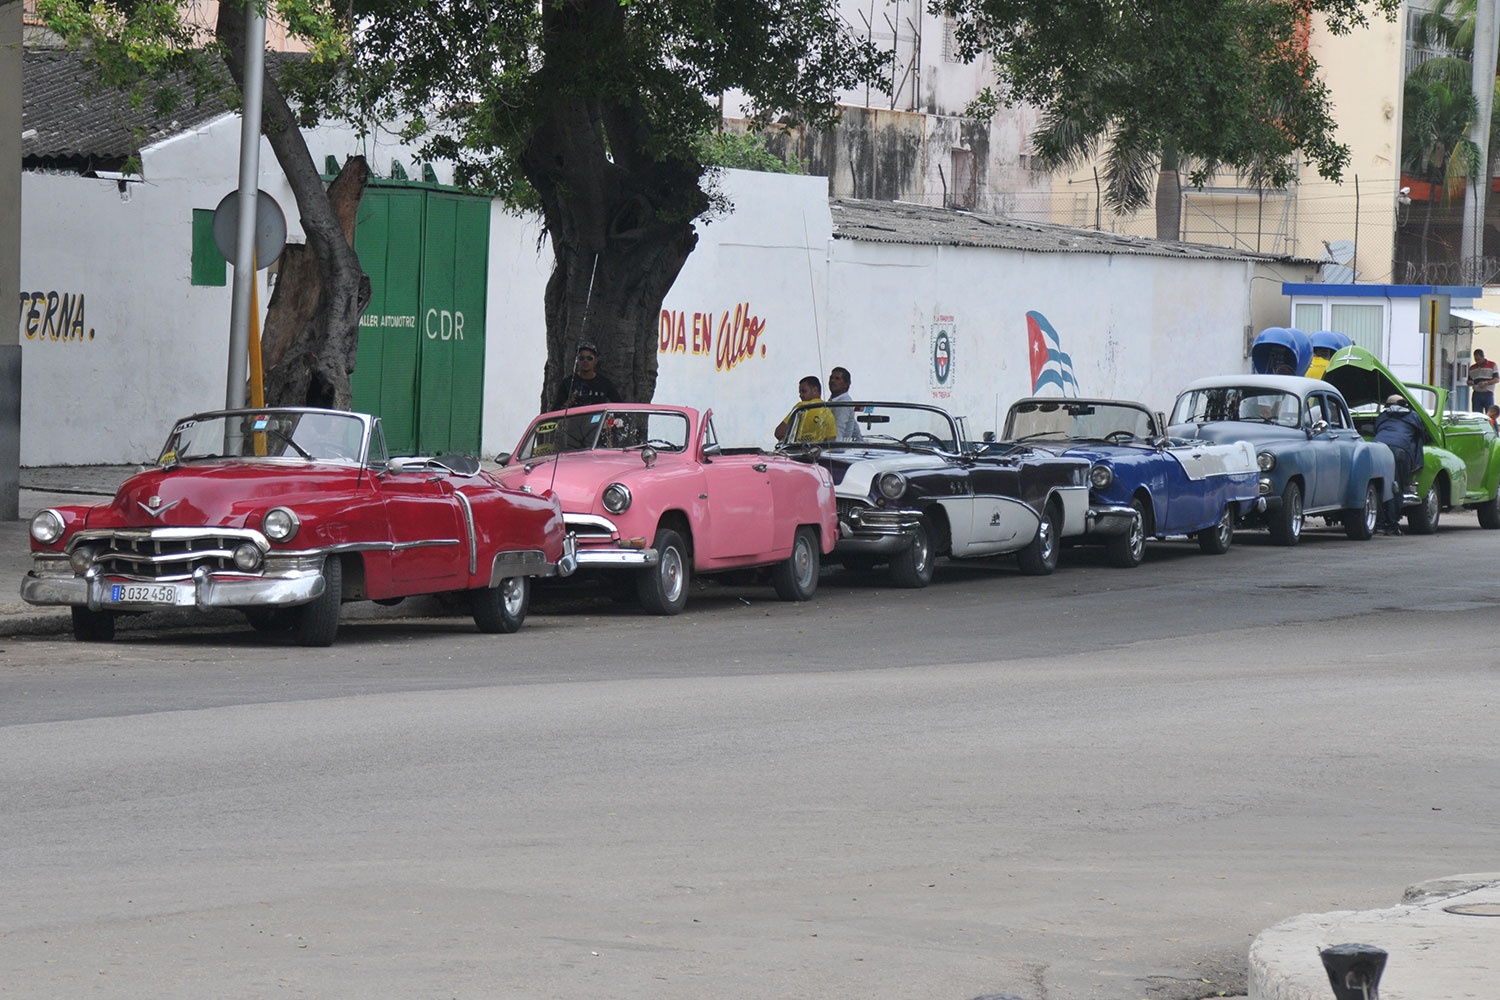 Cuban Car culture